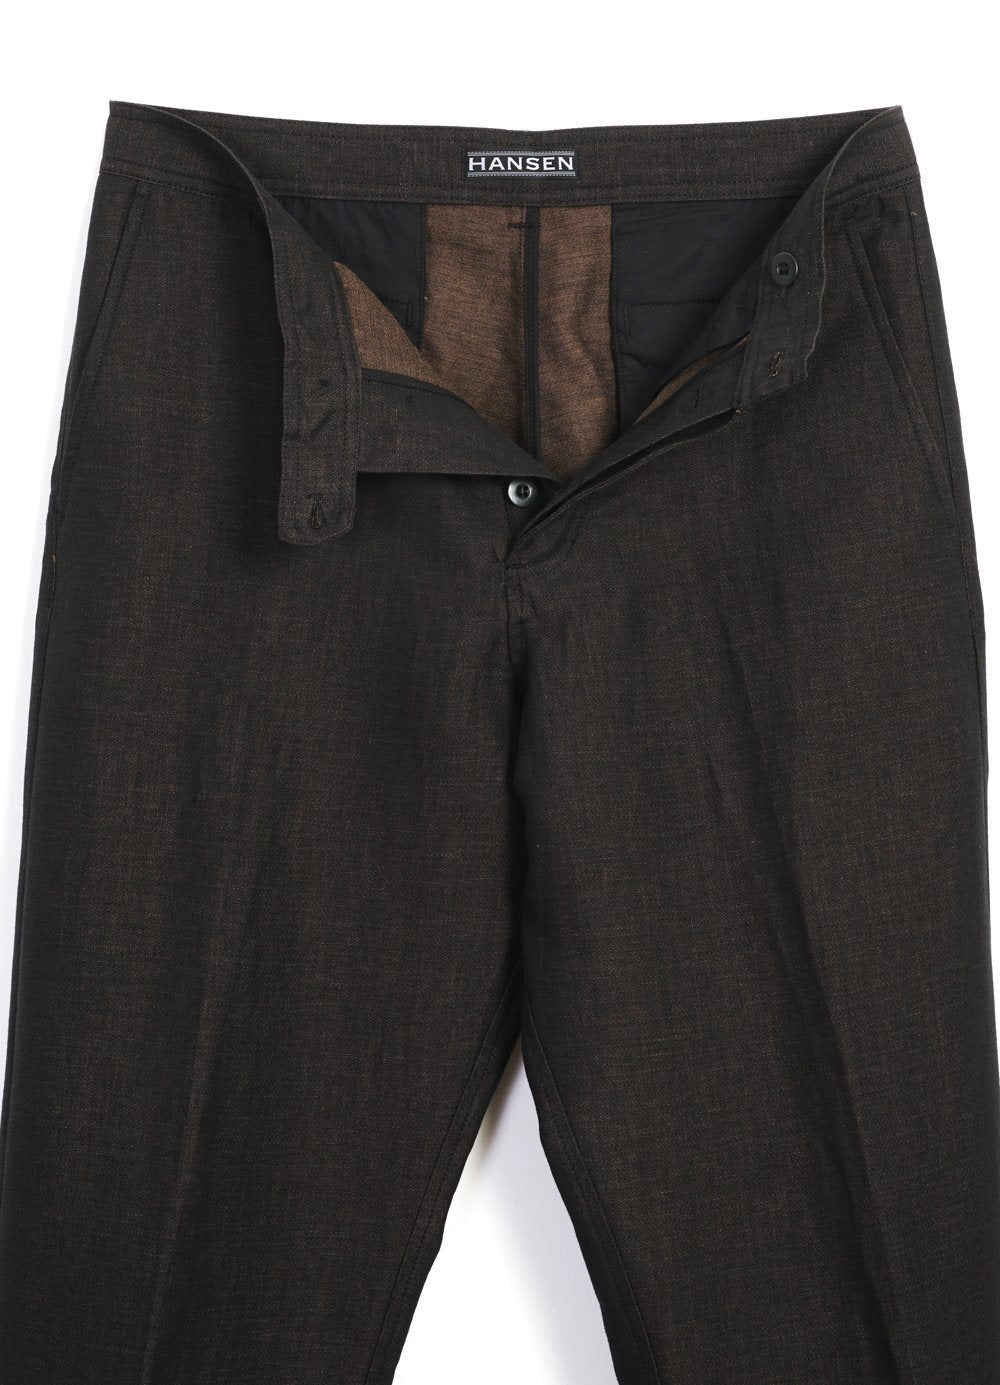 HANSEN Garments - KEN | Wide Cut Trousers| Brown - HANSEN Garments